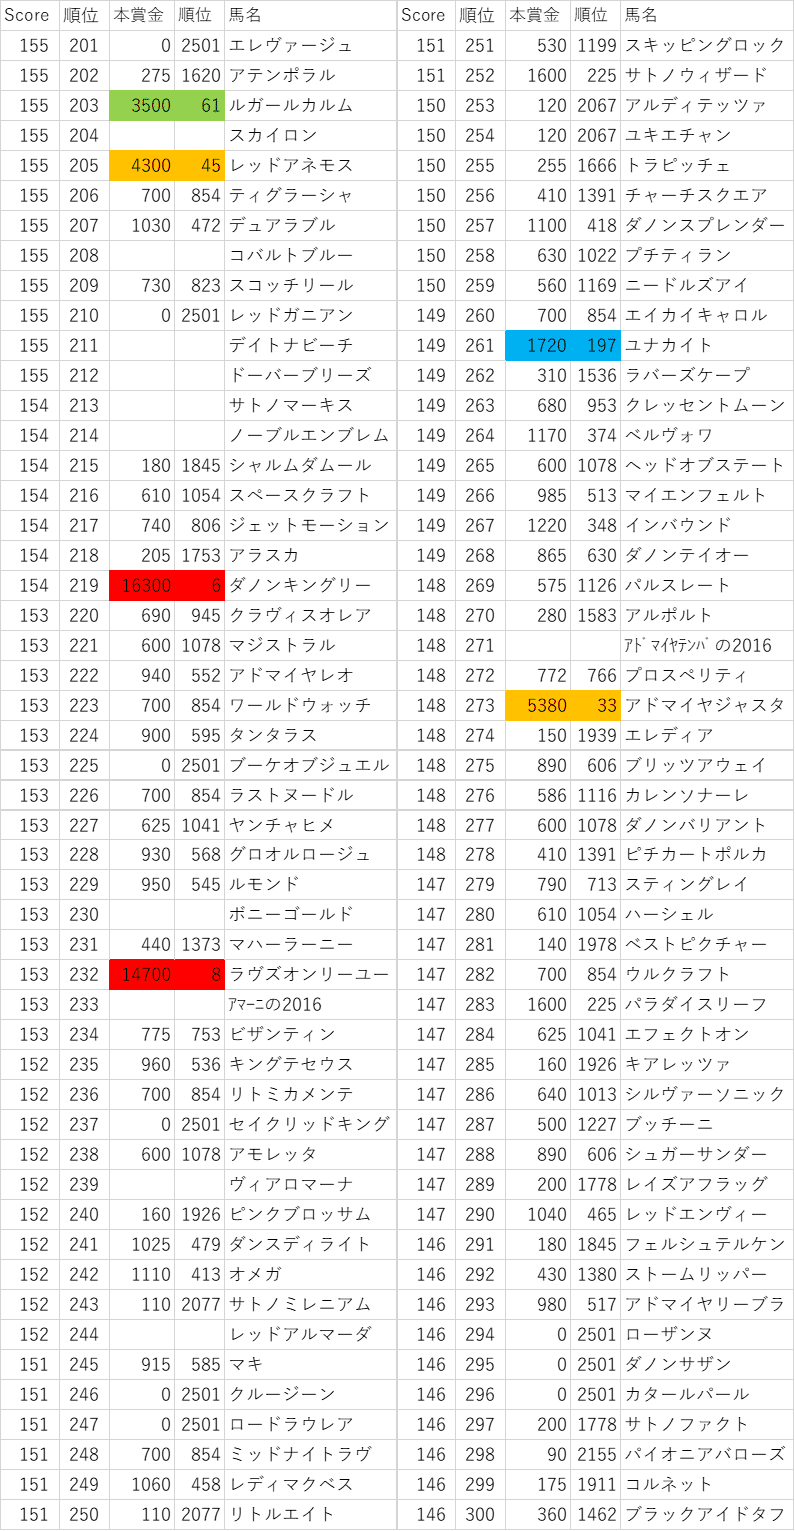 2016年産駒スコア201~300位